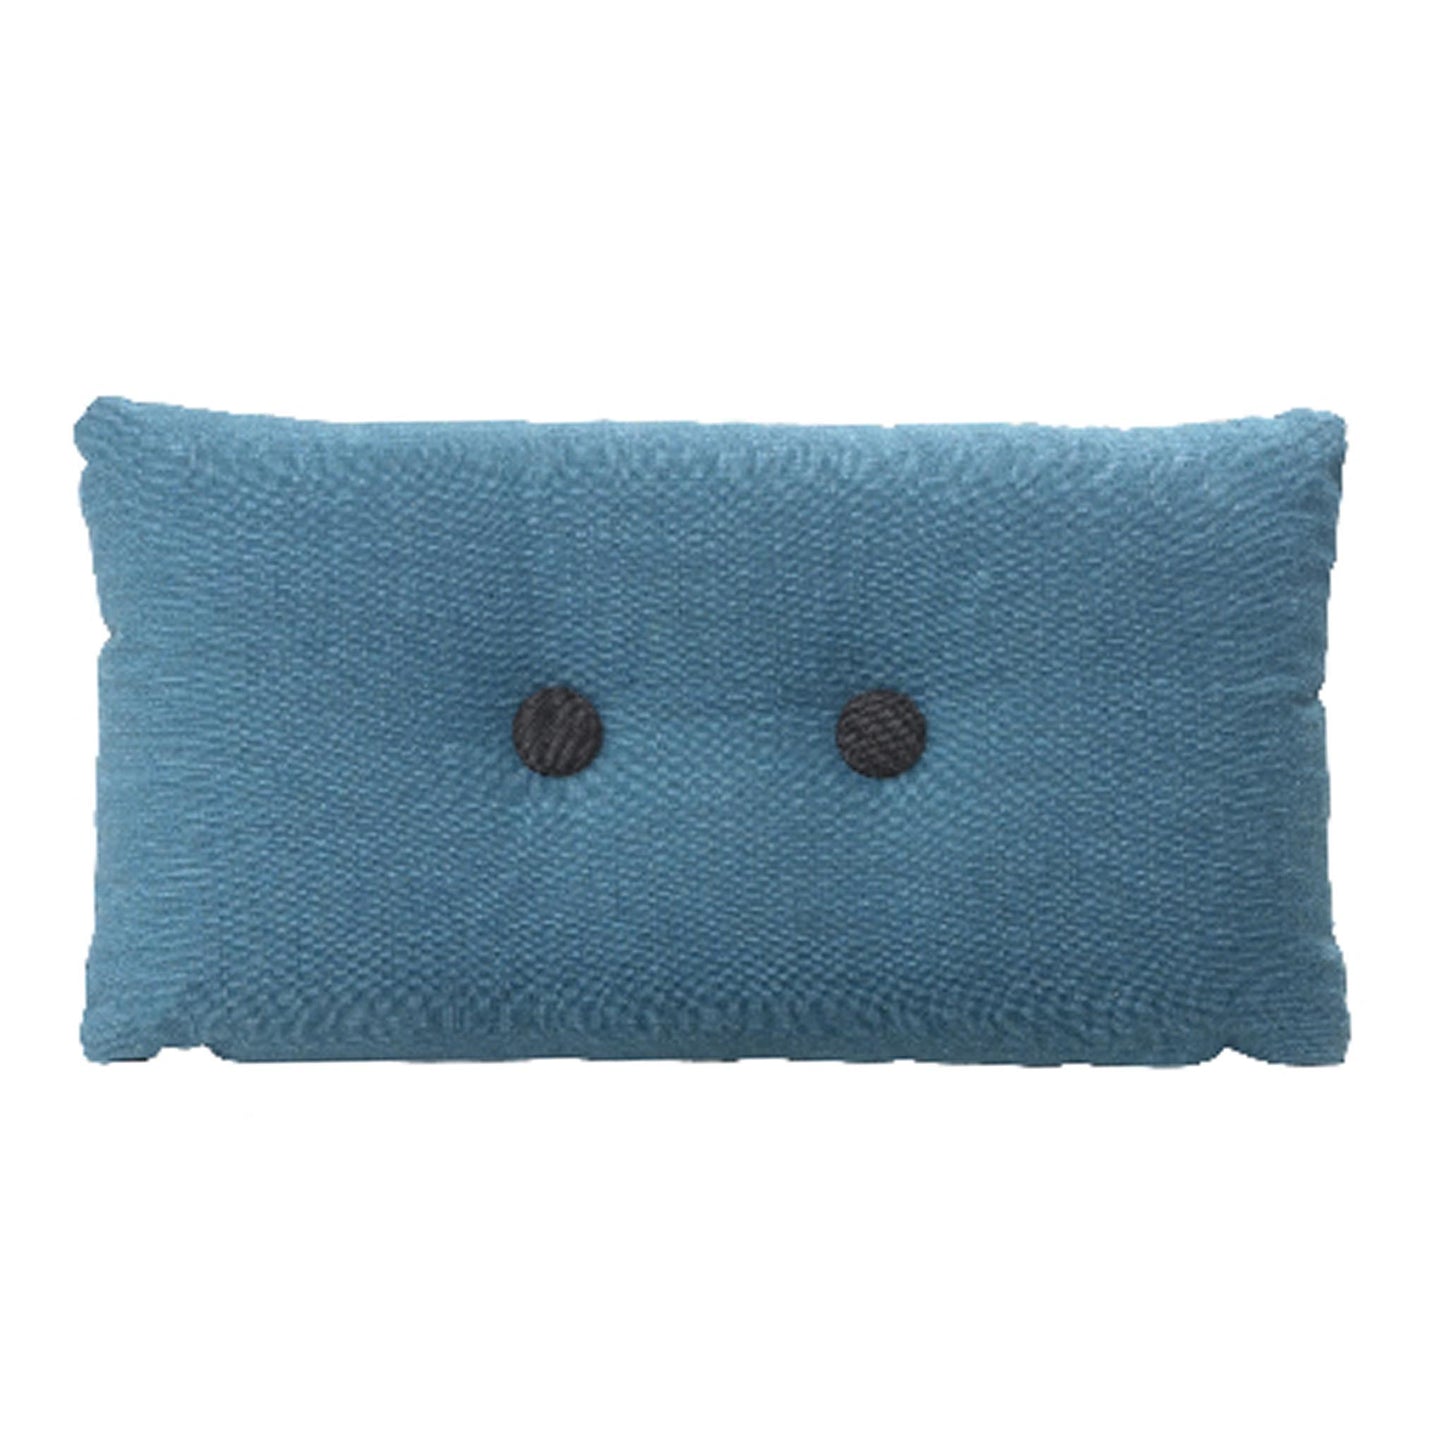 Ornamental pillow m/2 buttons